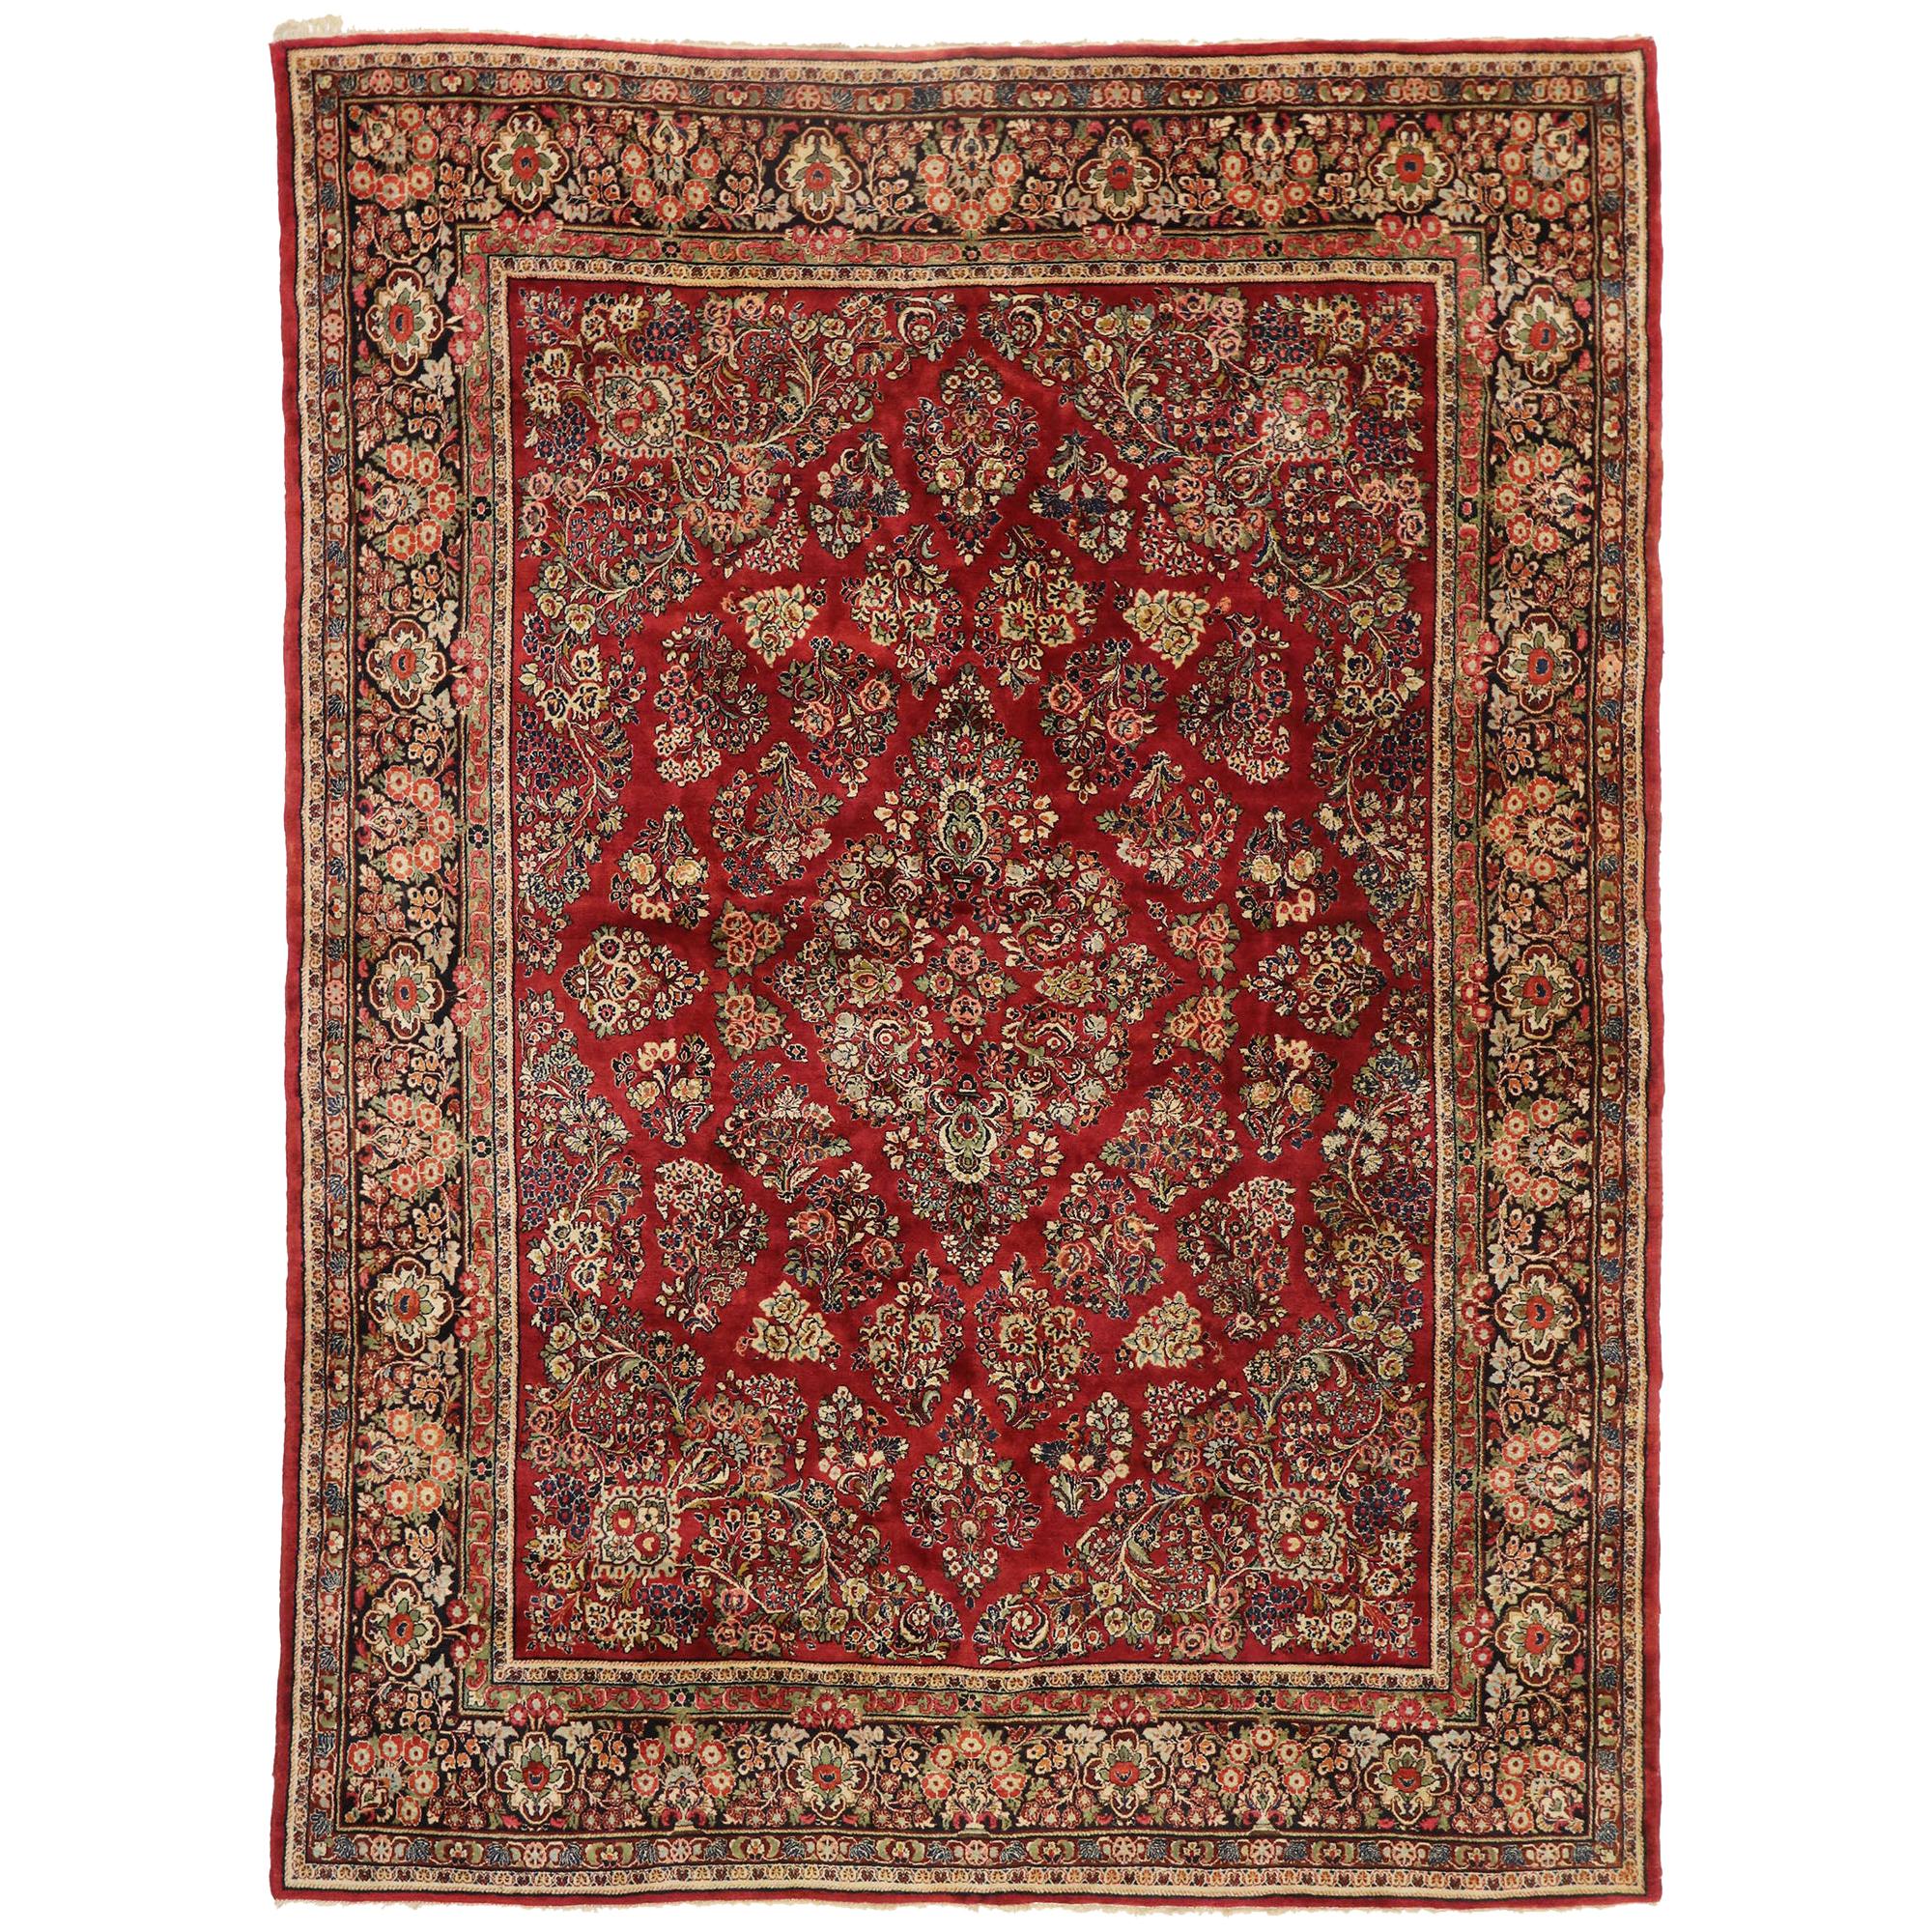 Persischer Sarouk-Teppich im traditionellen englischen Tudor Manor-Stil, Vintage